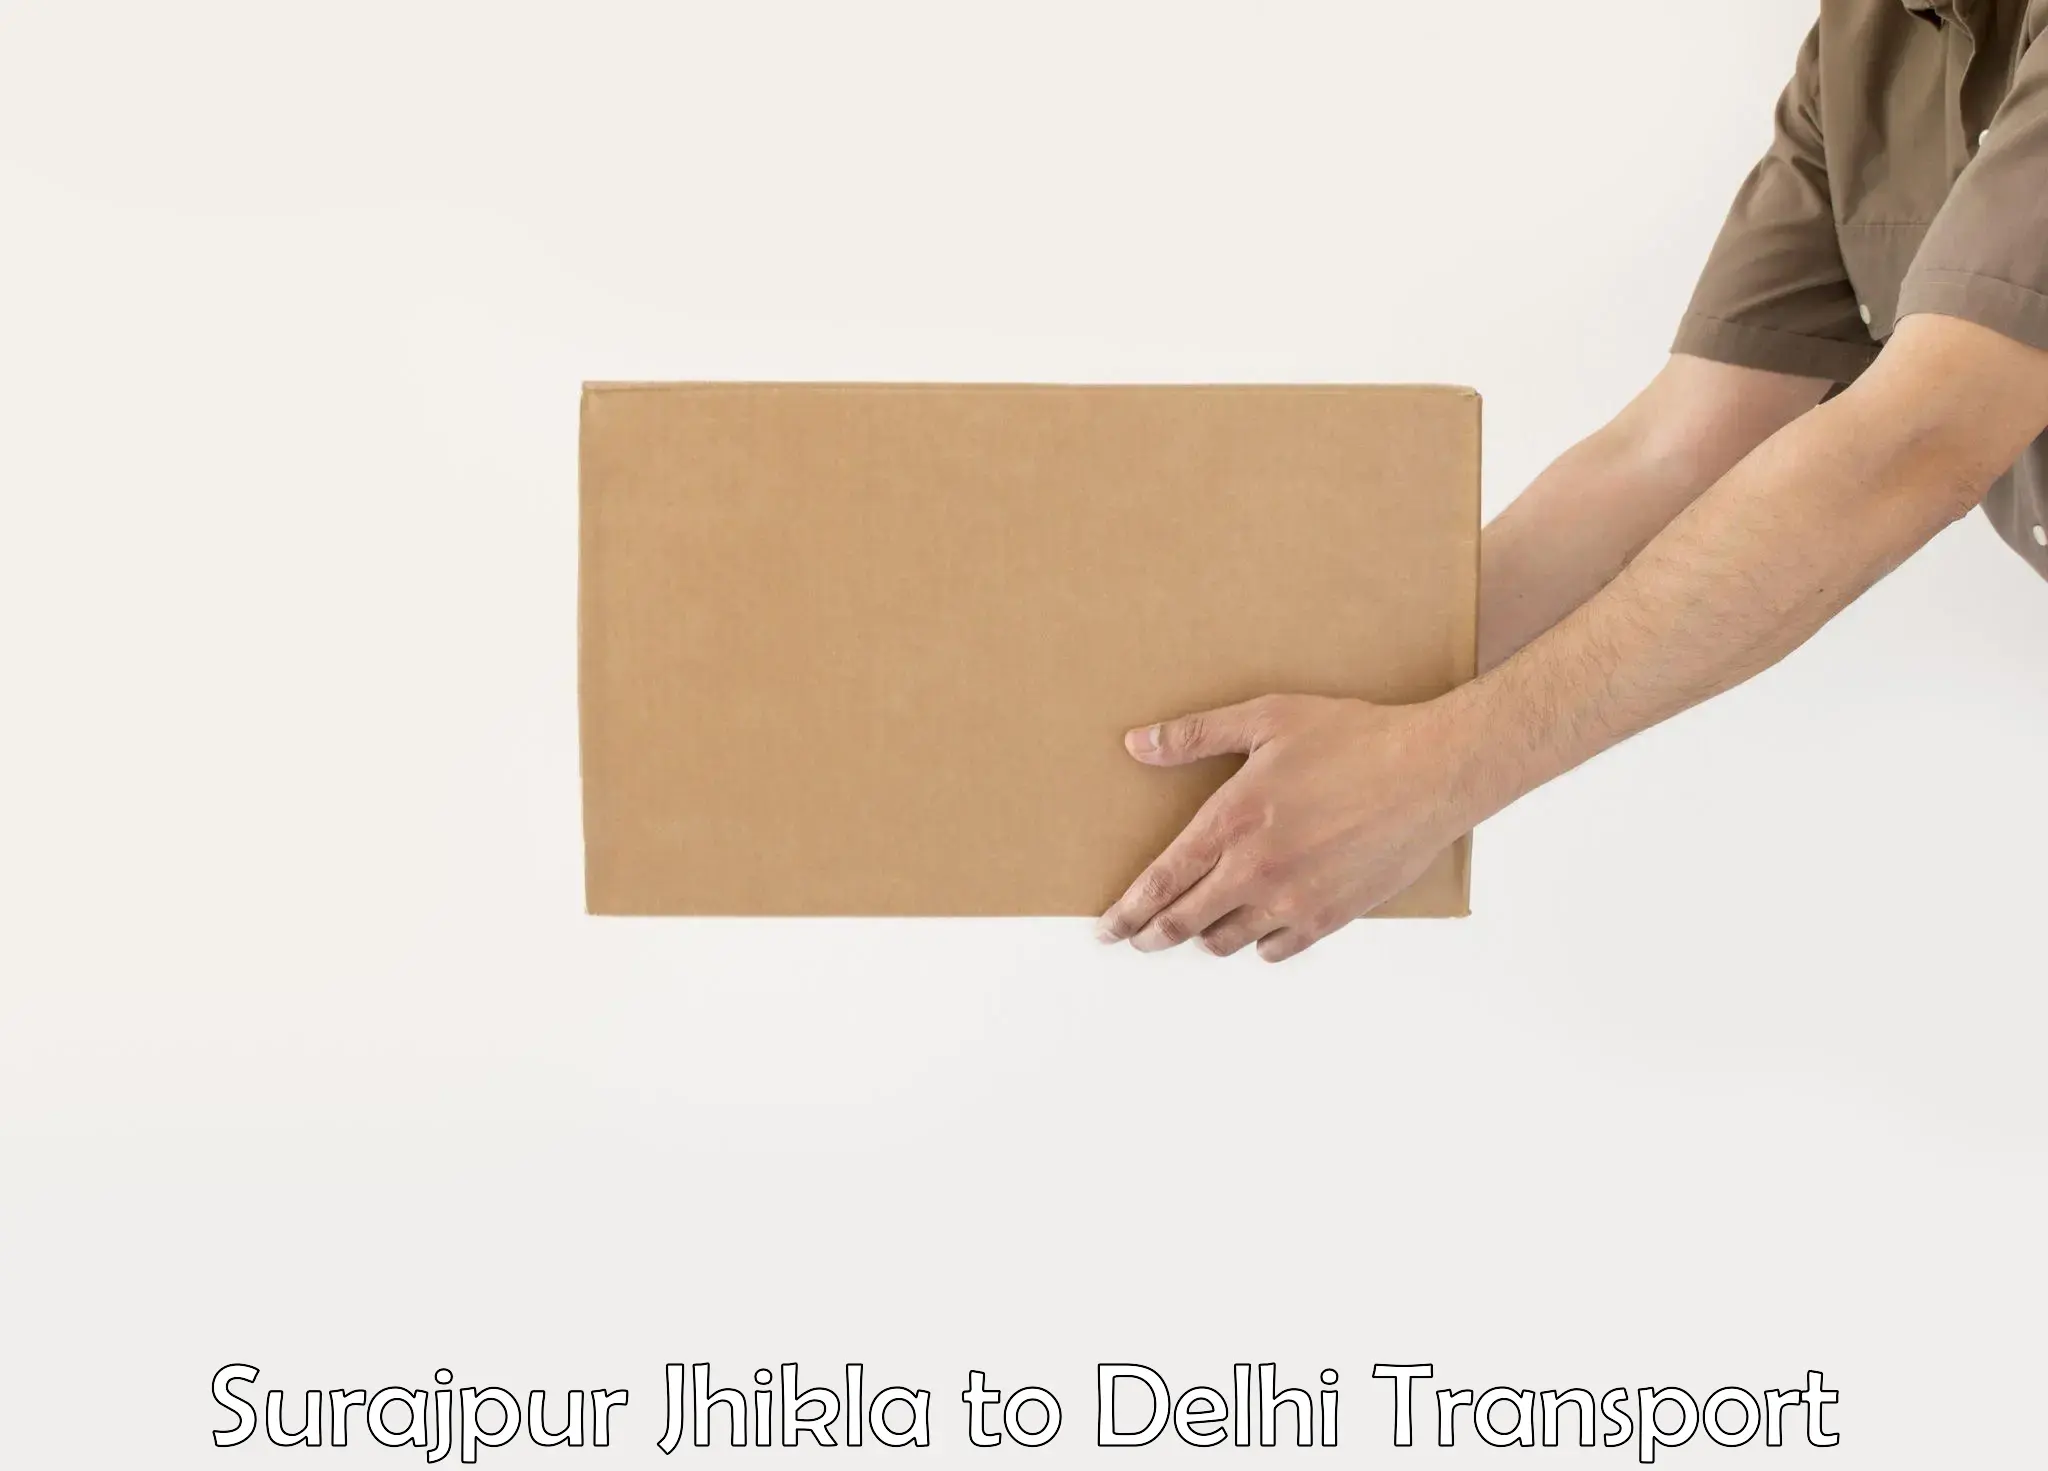 India truck logistics services Surajpur Jhikla to NIT Delhi